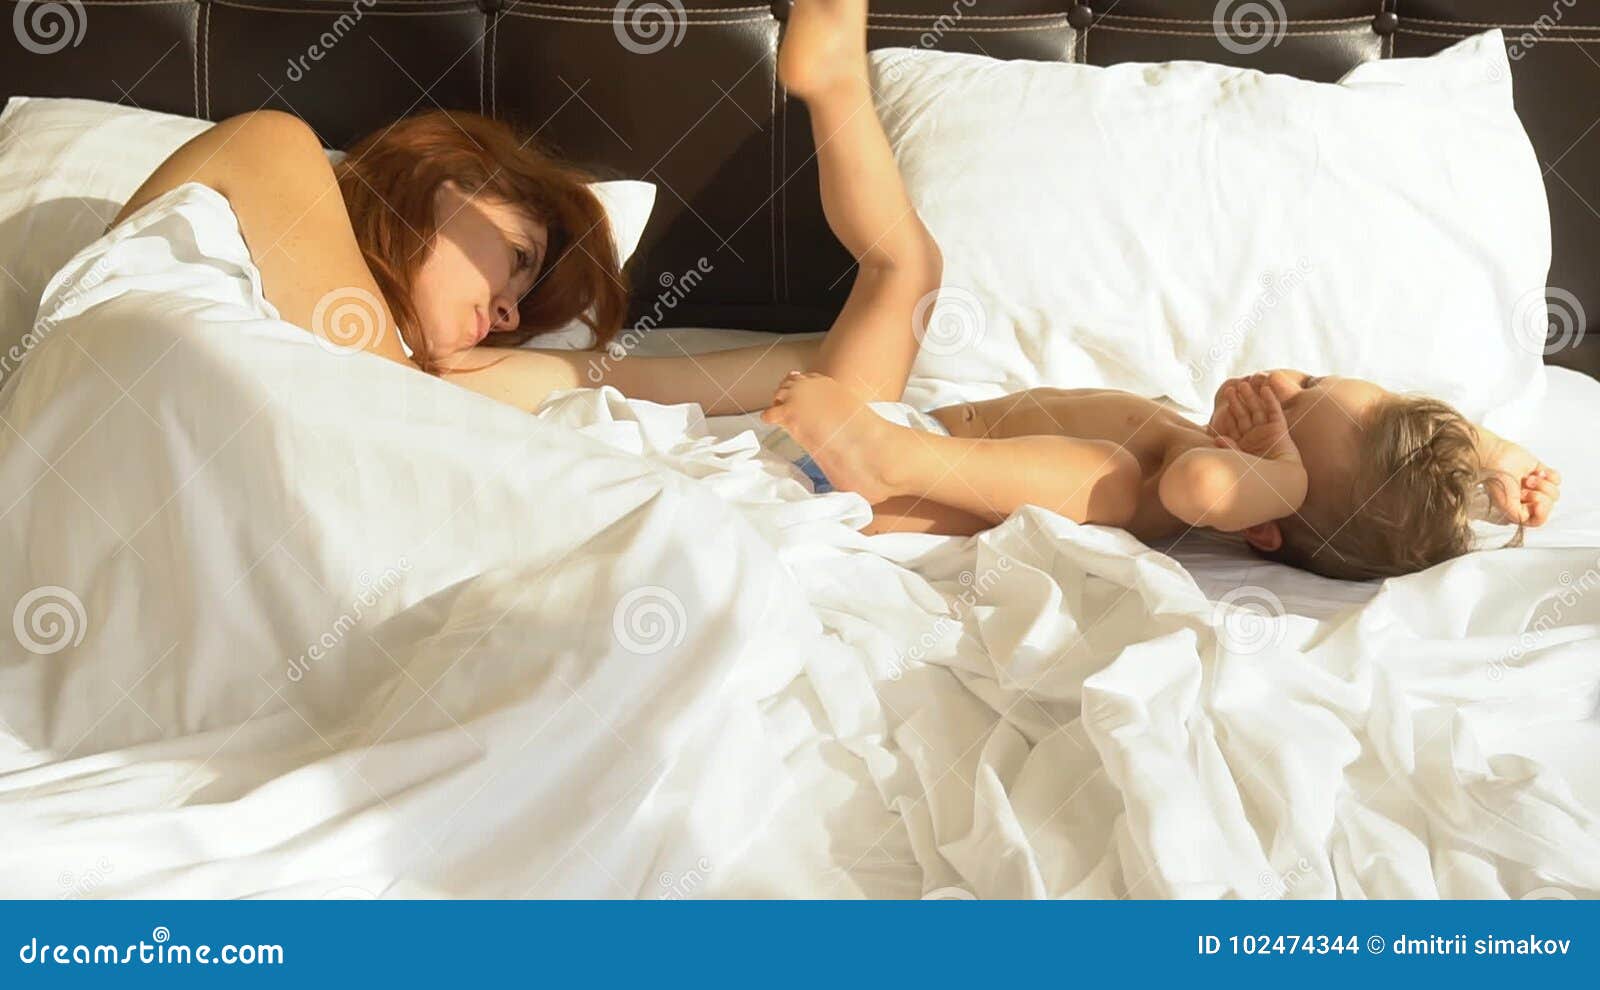 с мамой спят в одной постели эротика фото 30